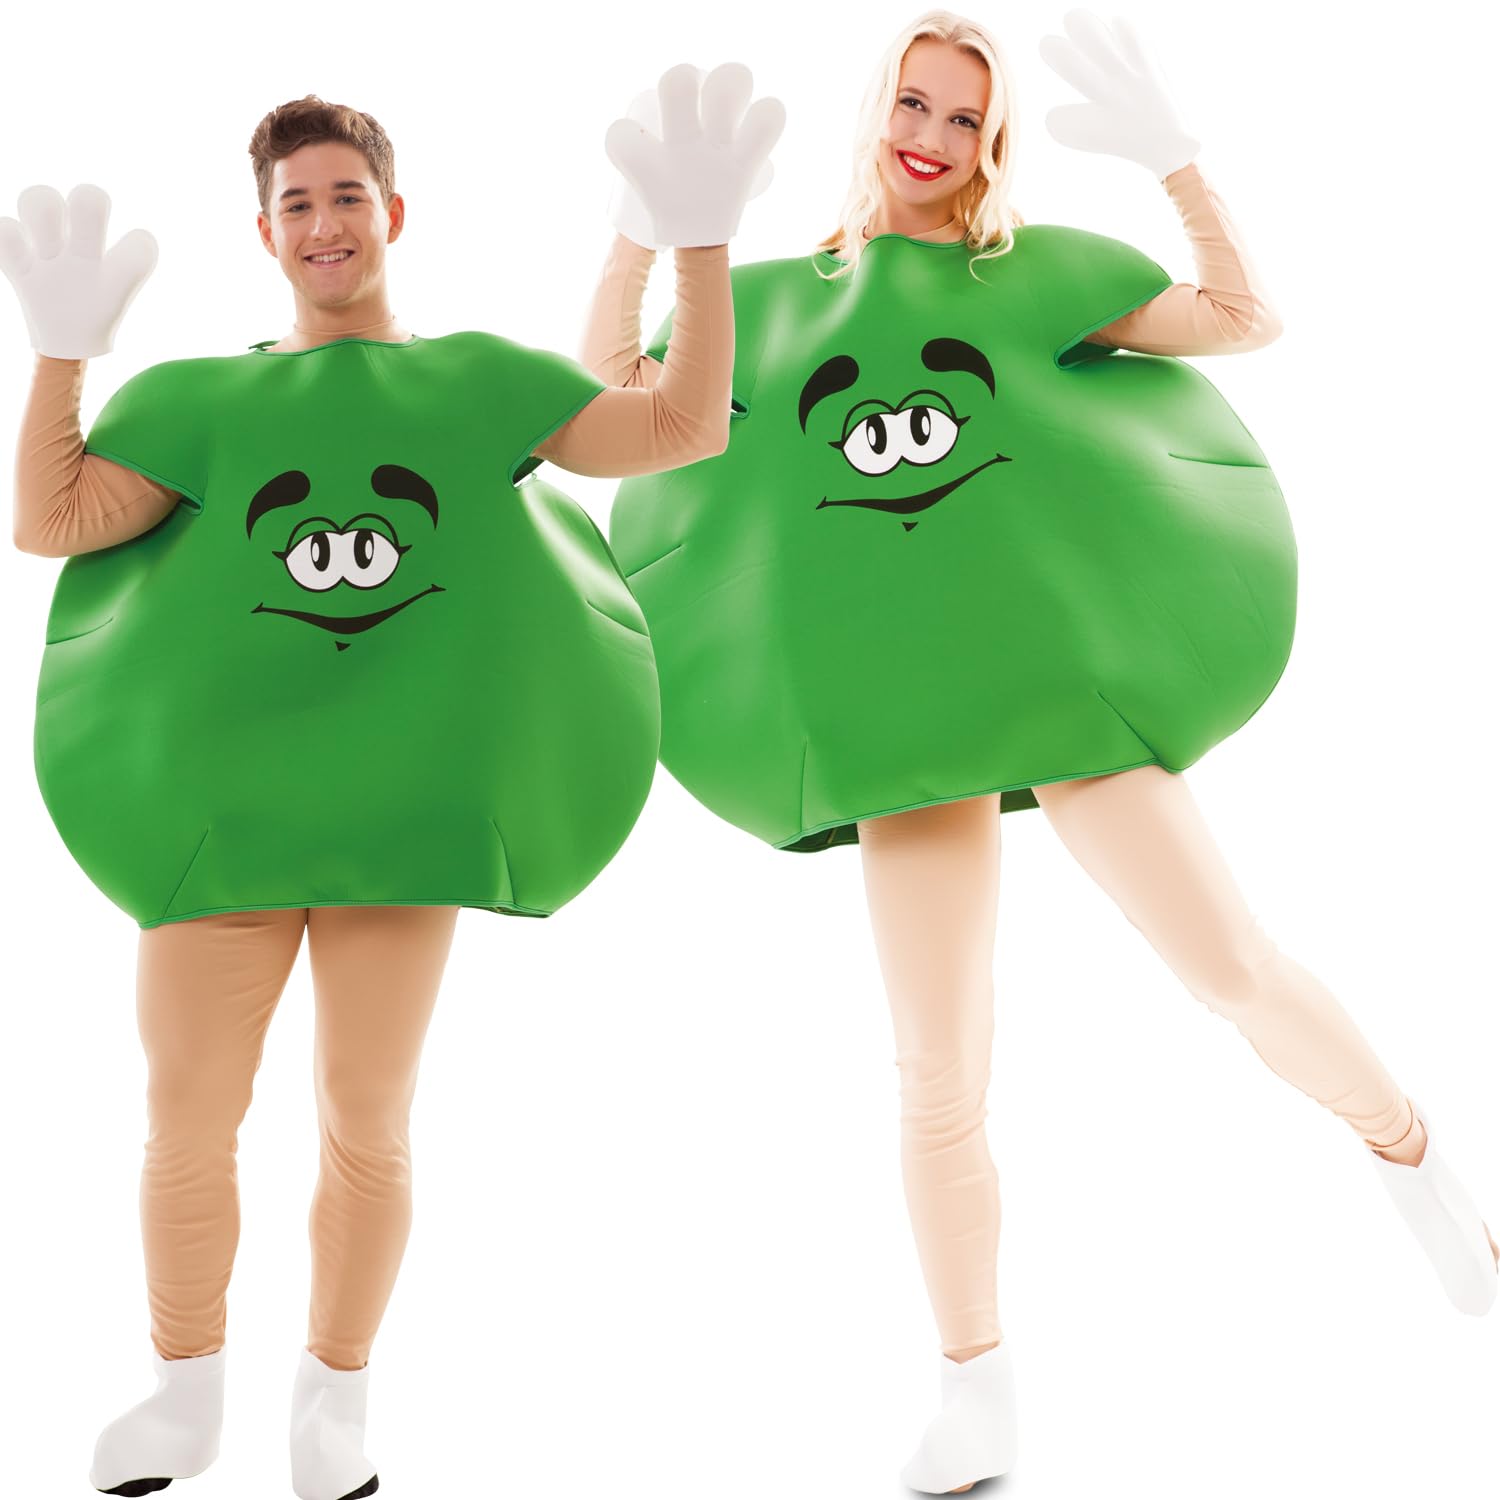 Krause & Sohn Schokolinse Kostüm Sweet Candy für Erwachsene Gr. M/L Gruppenkostüm Paarkostüm Fasching Karneval lustige Kostüm Süßigkeit (Grün)